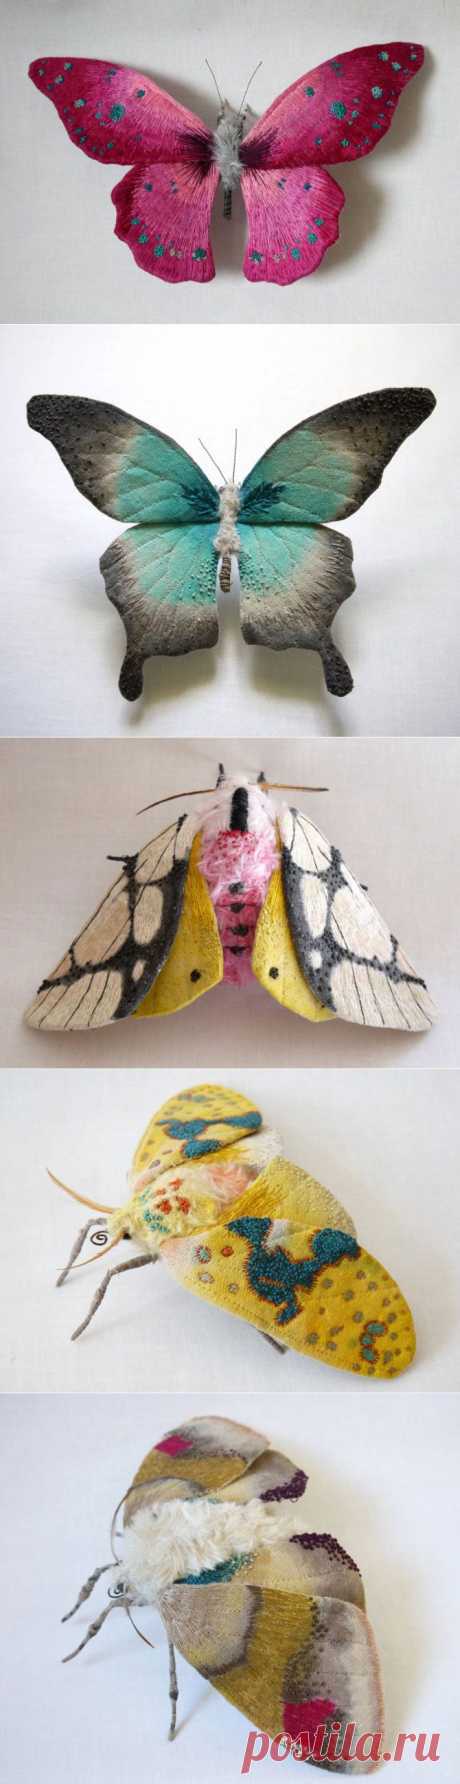 (+1) тема - Реалистичные скульптуры в виде текстильных мотыльков и бабочек | Очумелые ручки